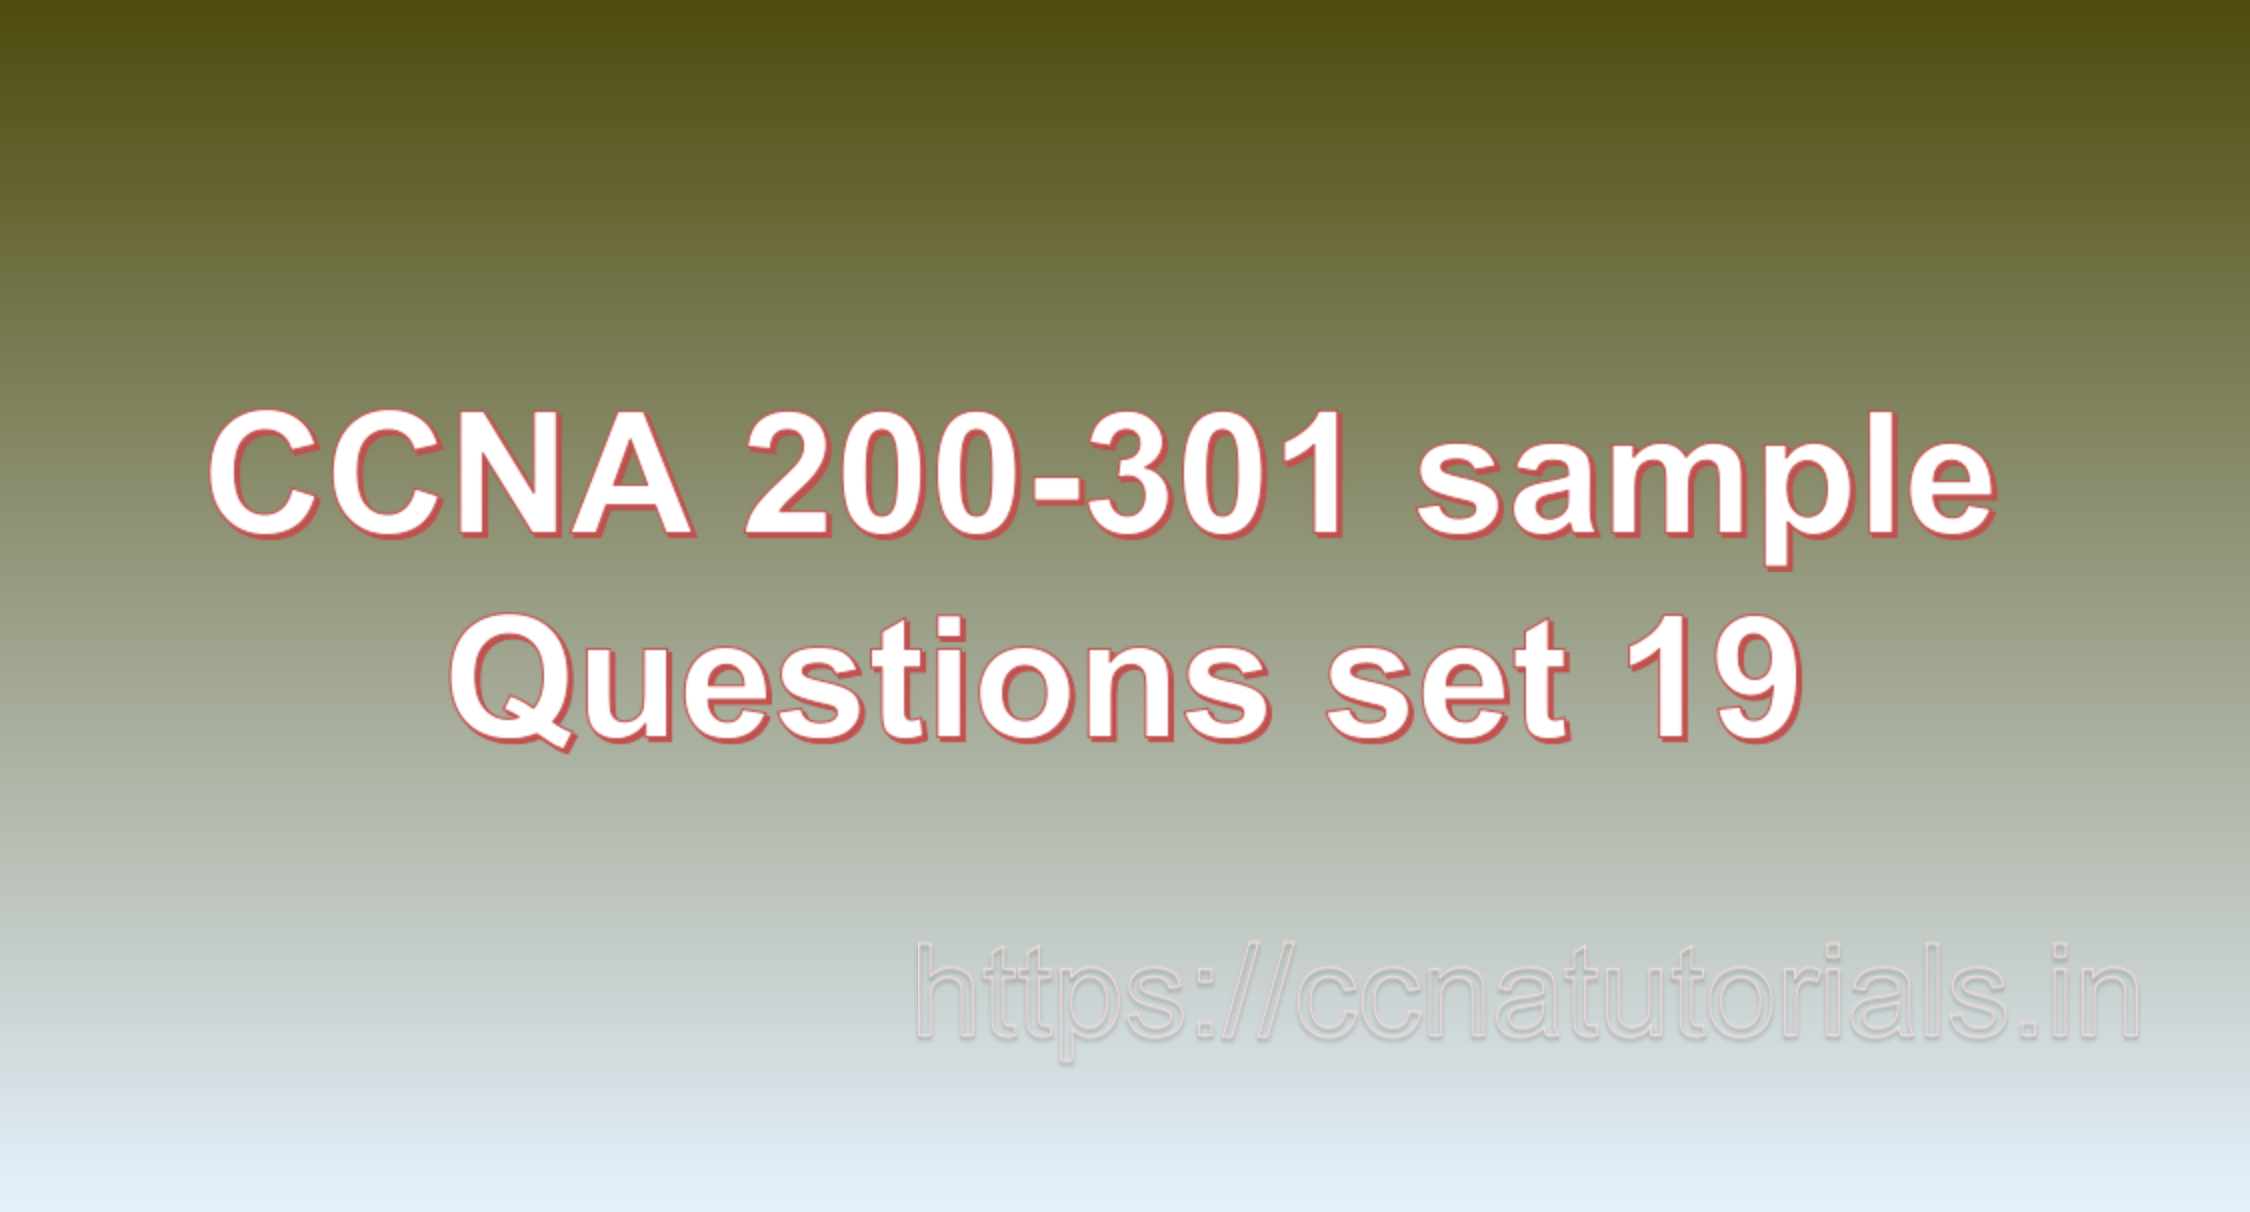 ccna sample questions set 19, ccna tutorials, CCNA Exam, ccna